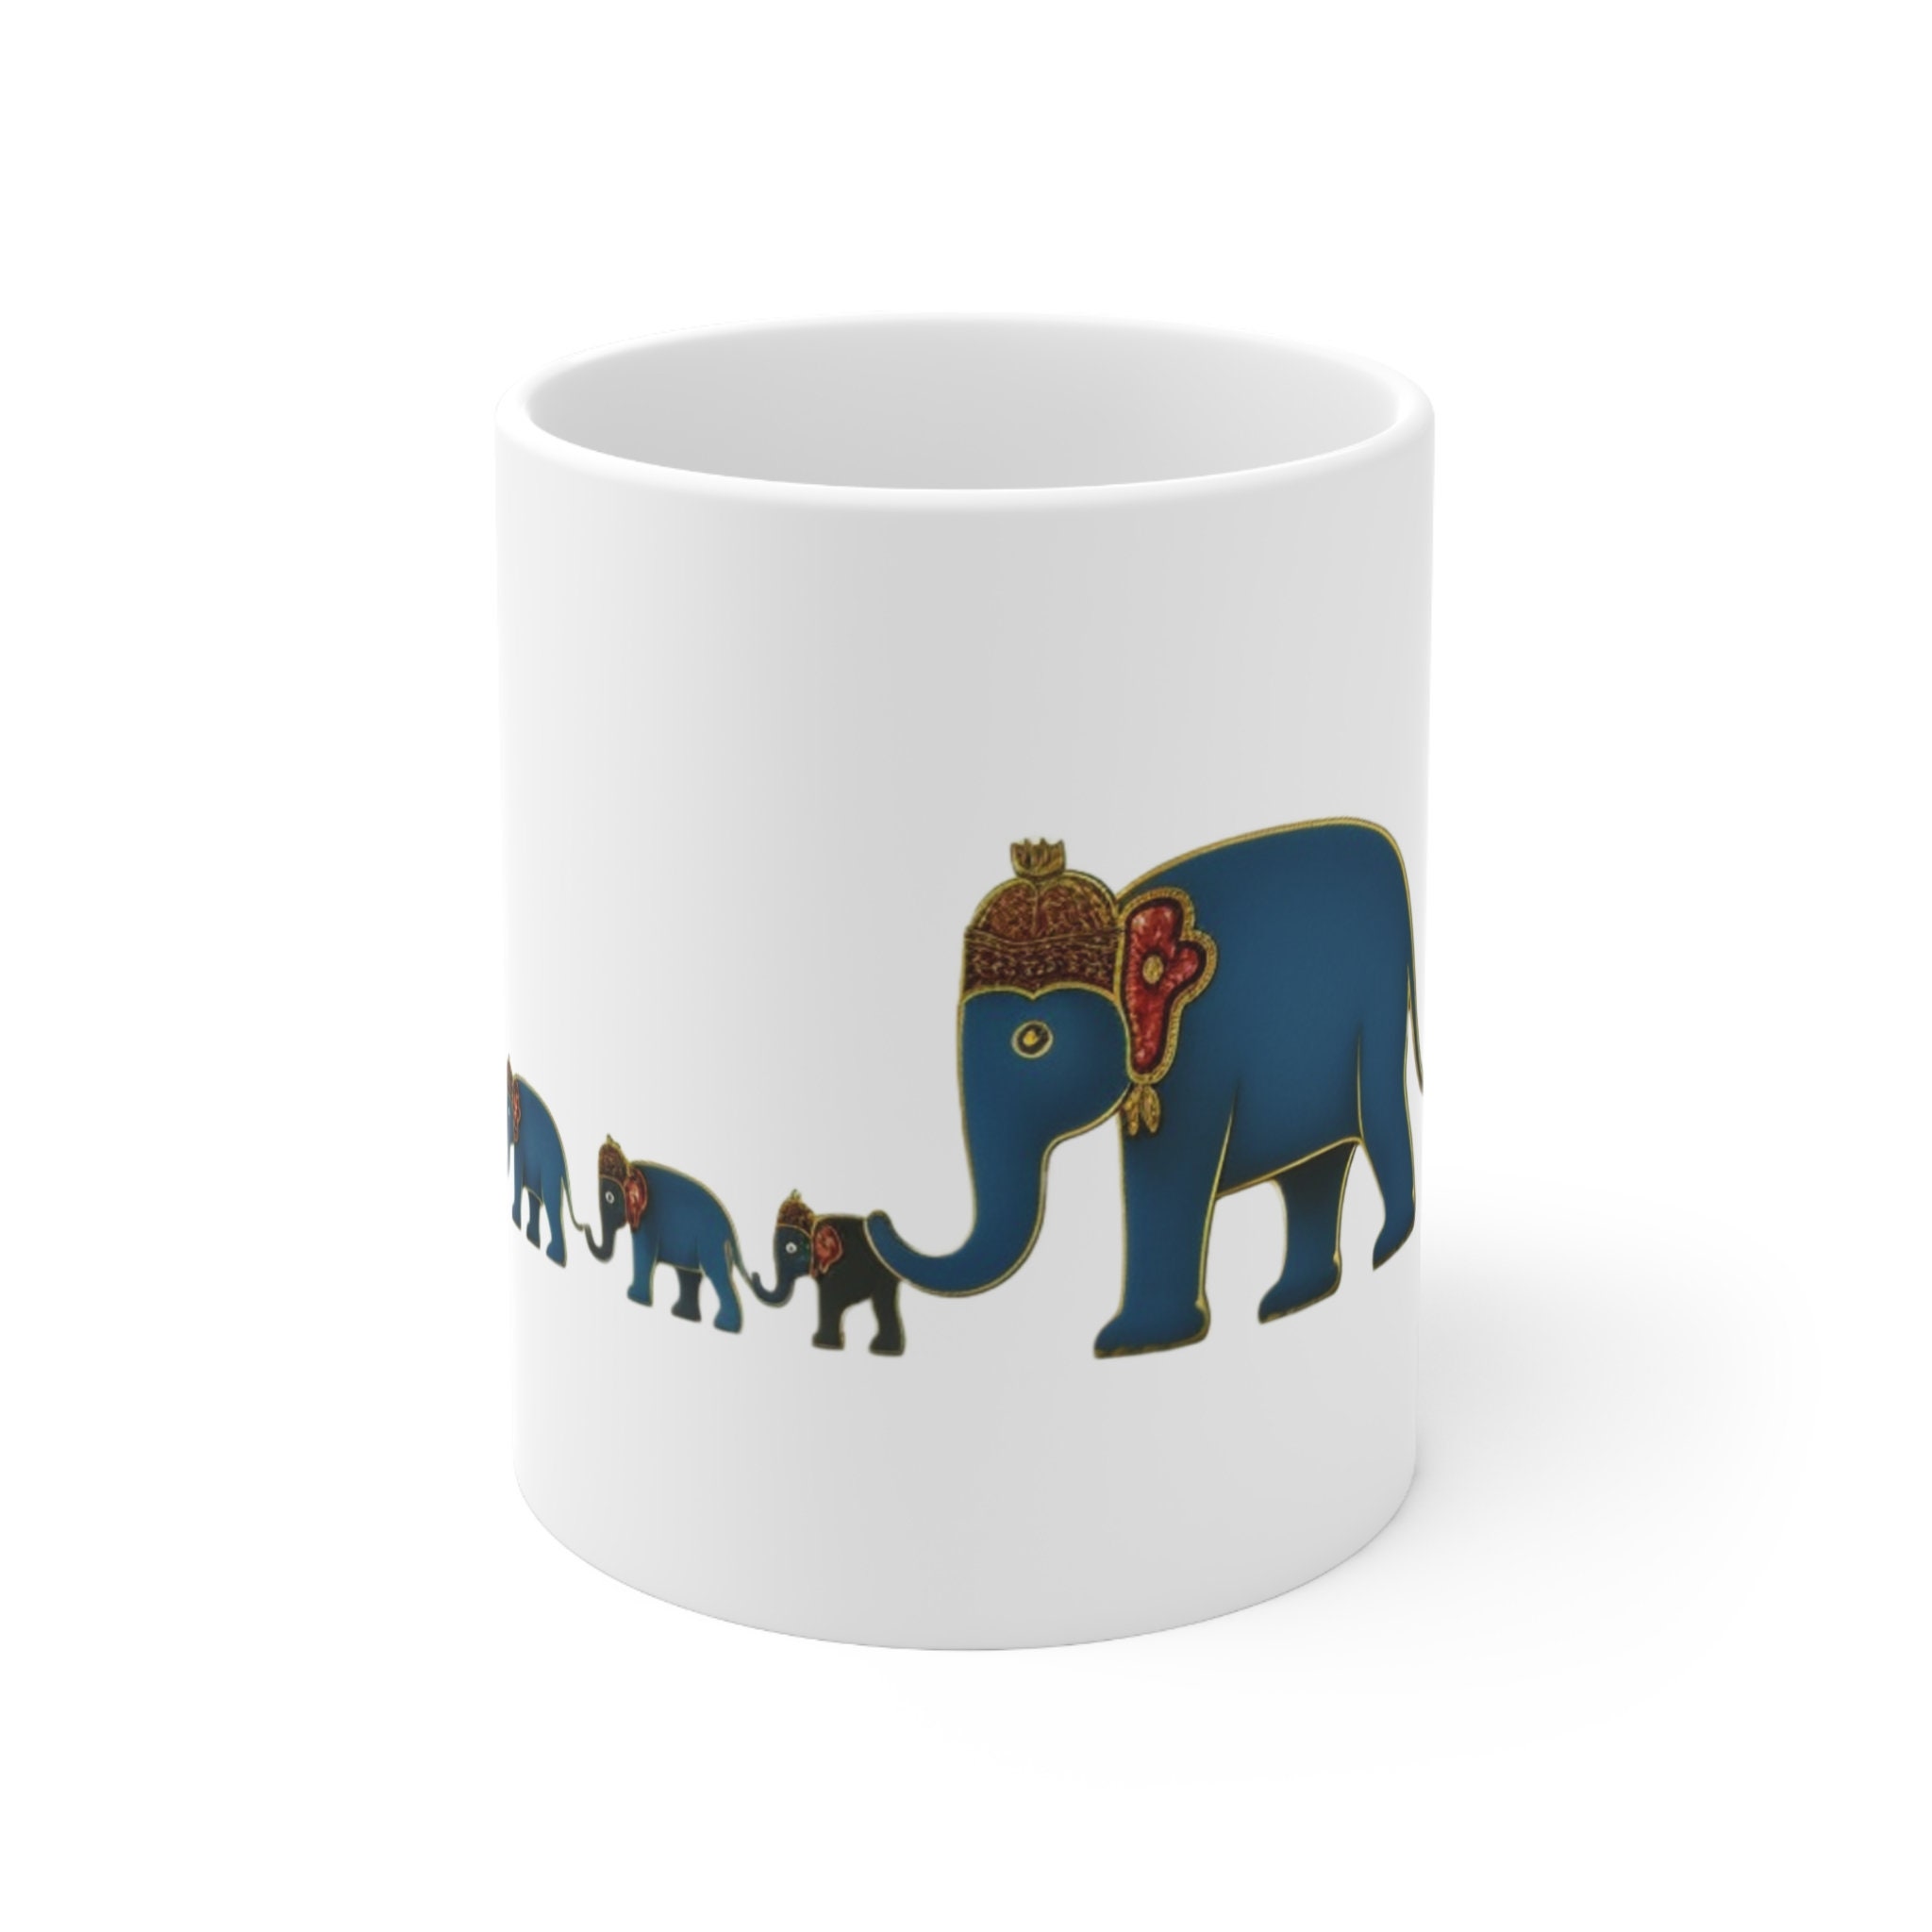 Tourist Mug Kawaii Cute Elephant Printed Creative Coffee Tea Mug